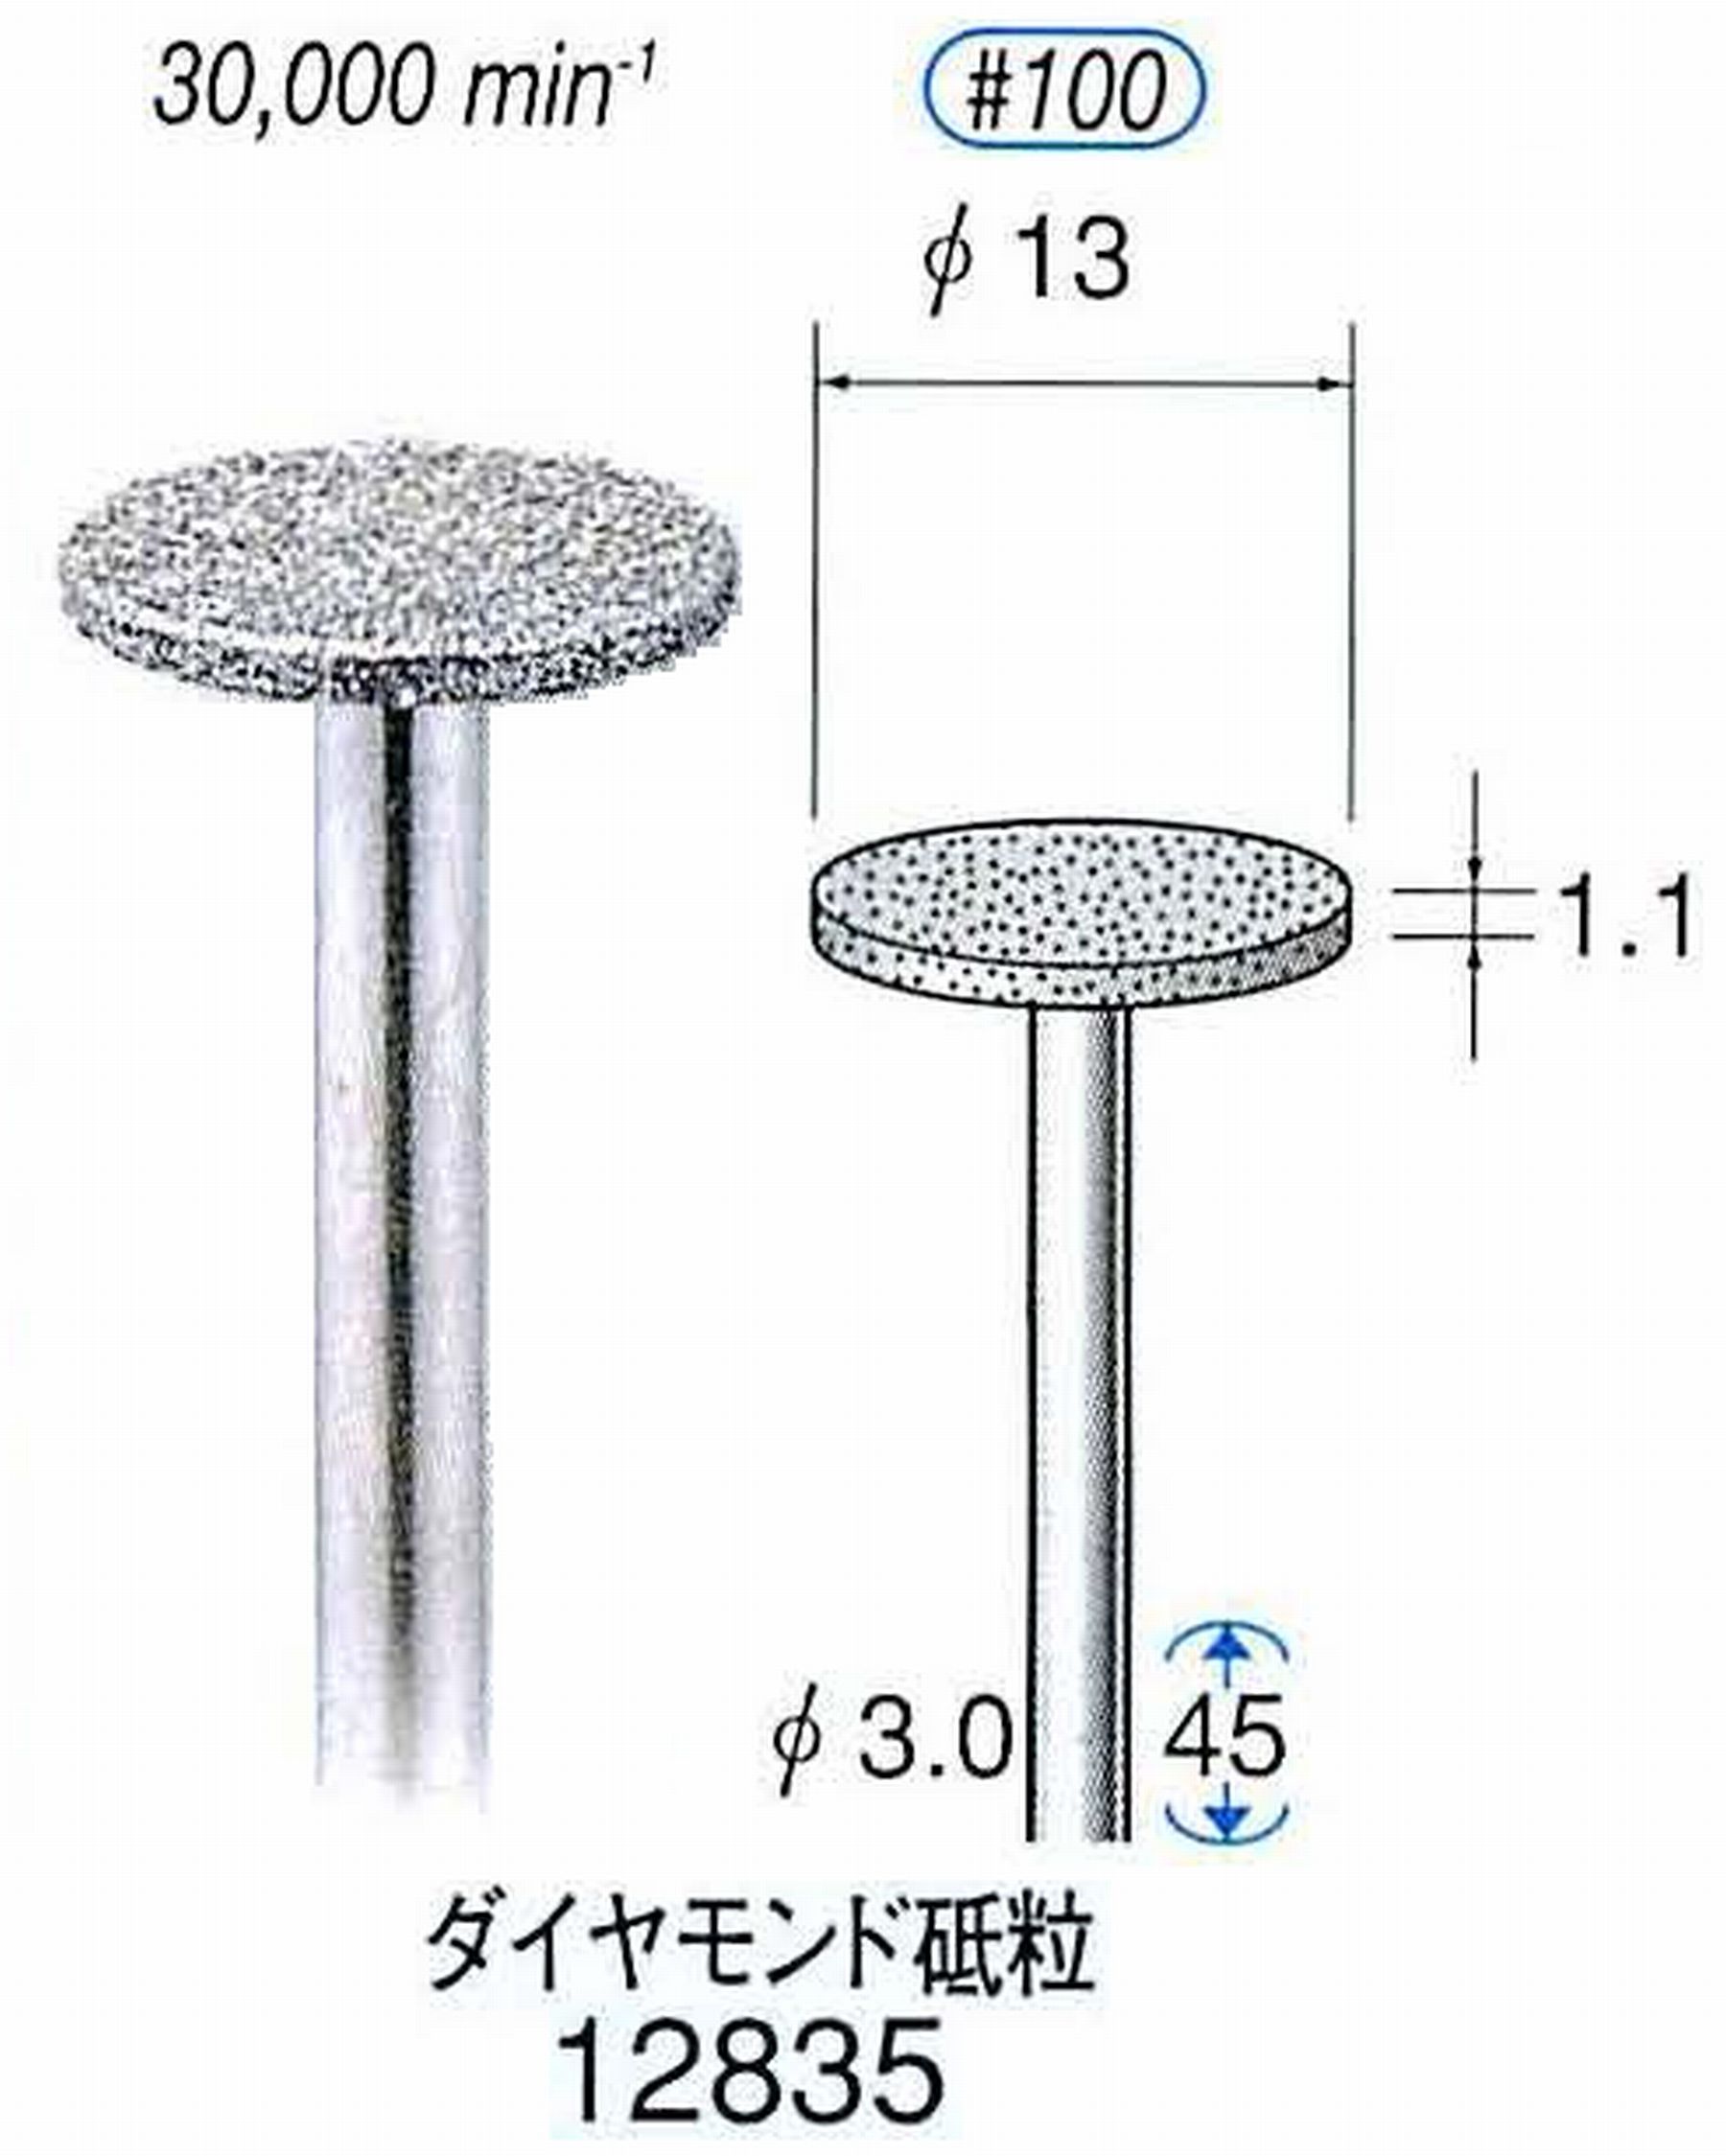 ナカニシ/NAKANISHI クラフト・ホビー用ダイヤモンドバー ダイヤモンド砥粒 軸径(シャンク)φ3.0mm 12835